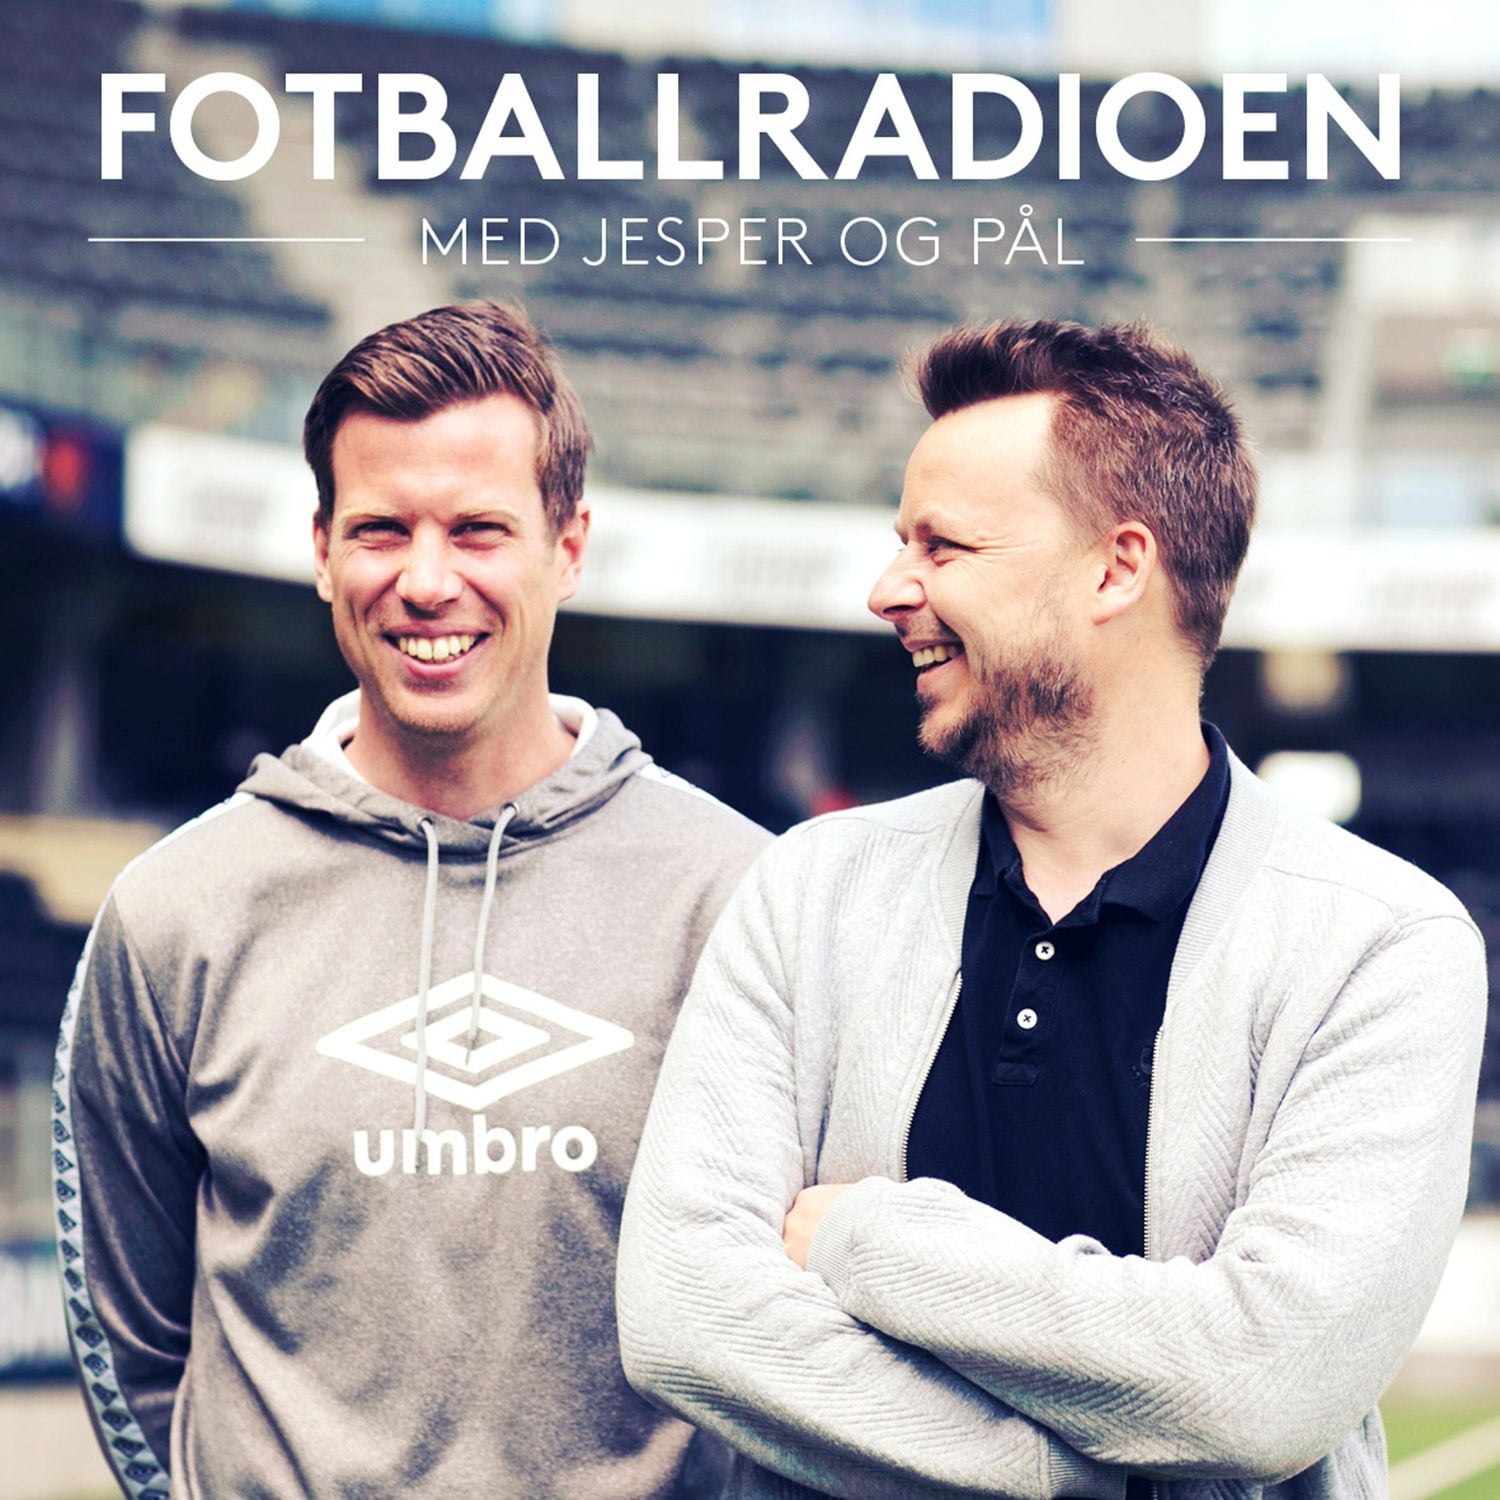 Fotballradioen med Jesper og Pål